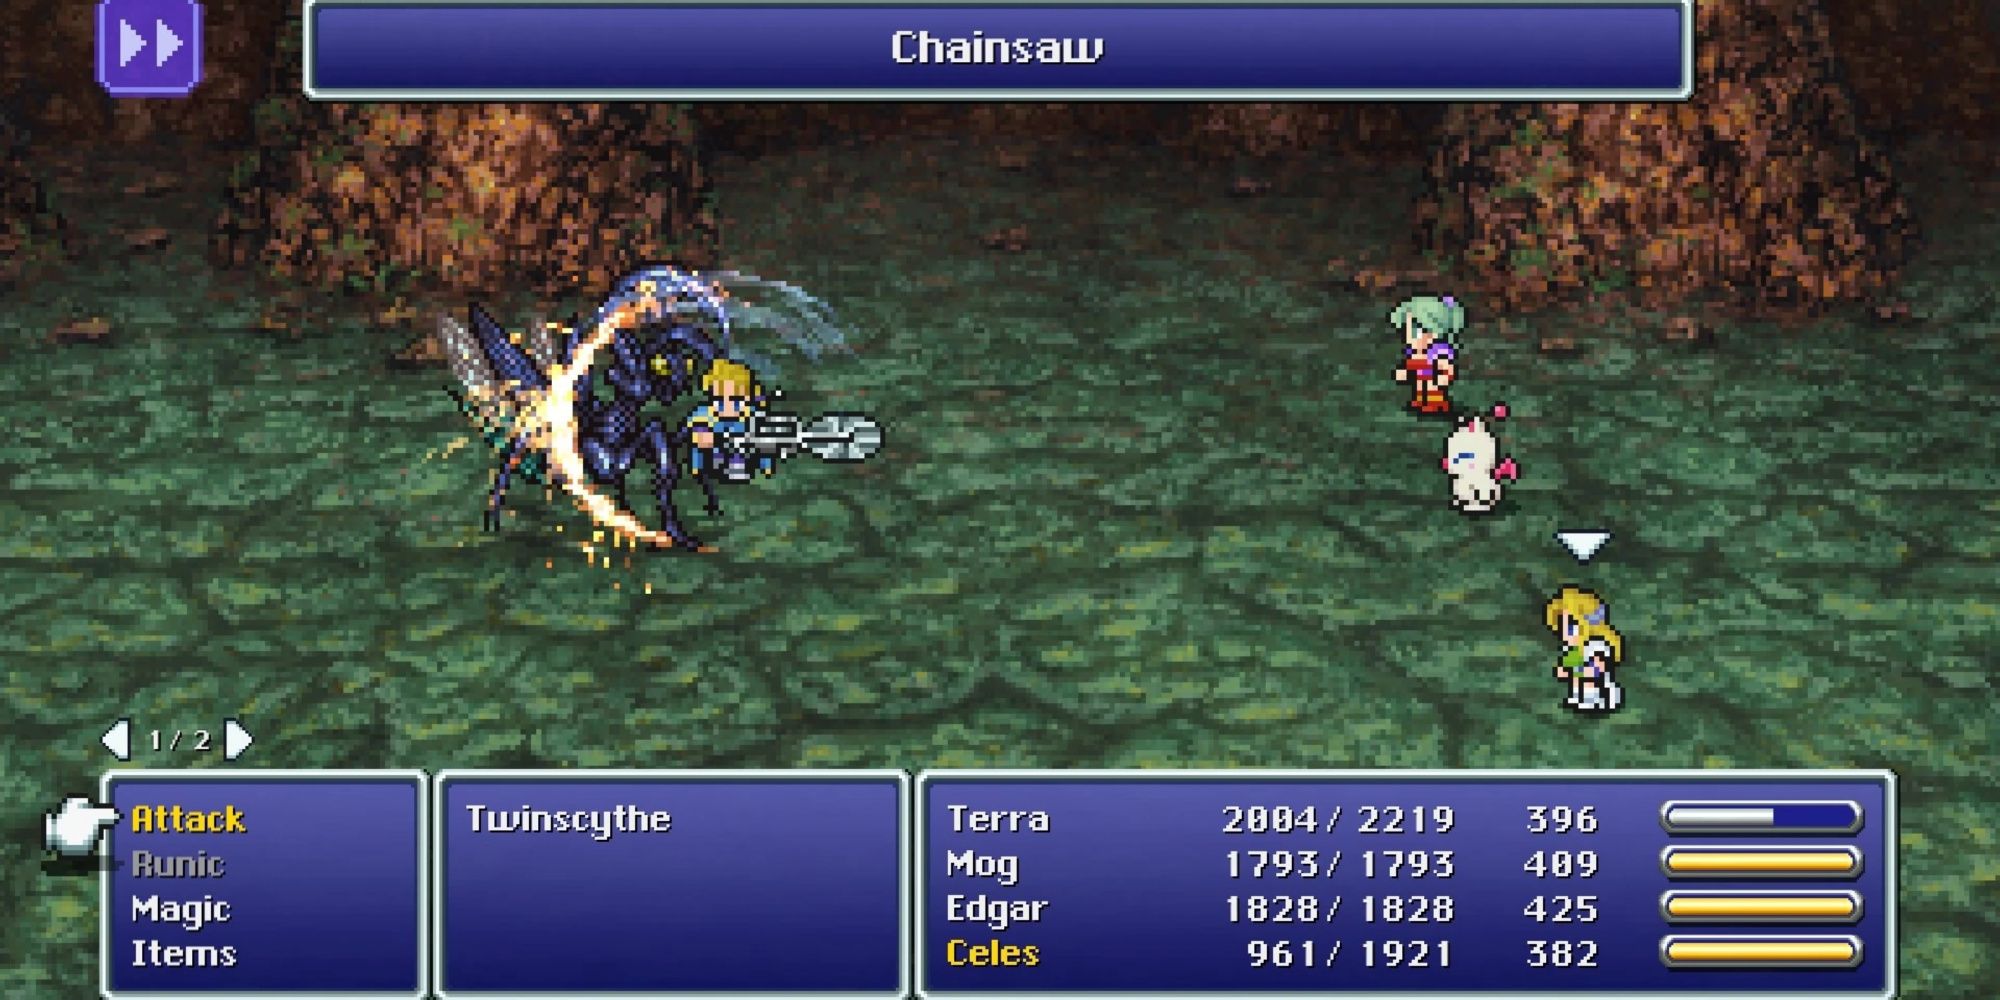 Fighting enemies with Edgar in Final Fantasy 6